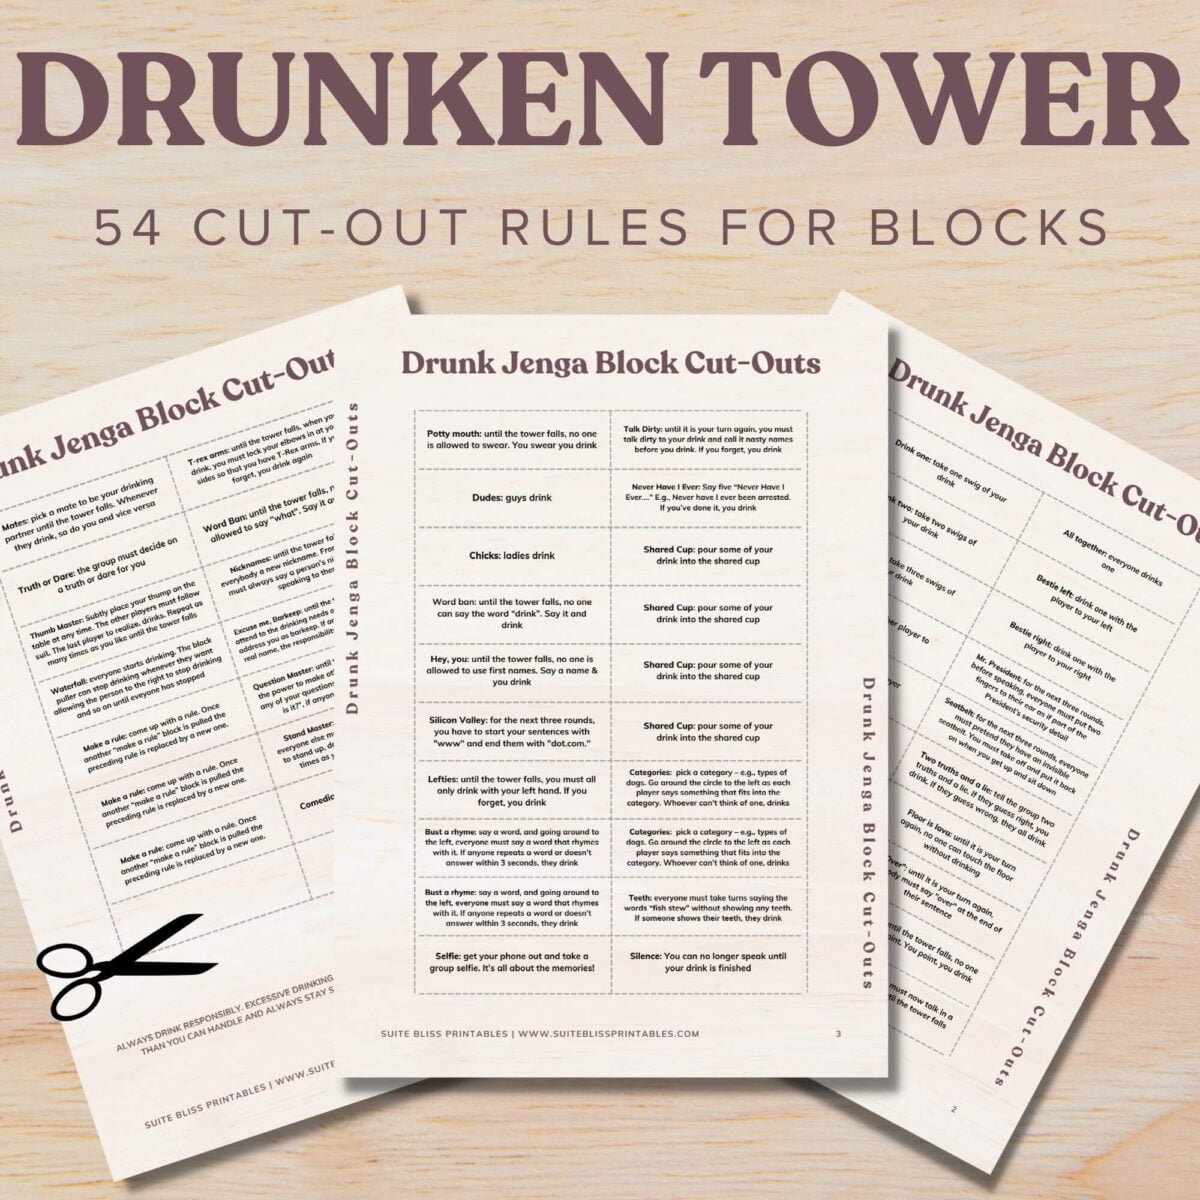 Drunken Tower PDF